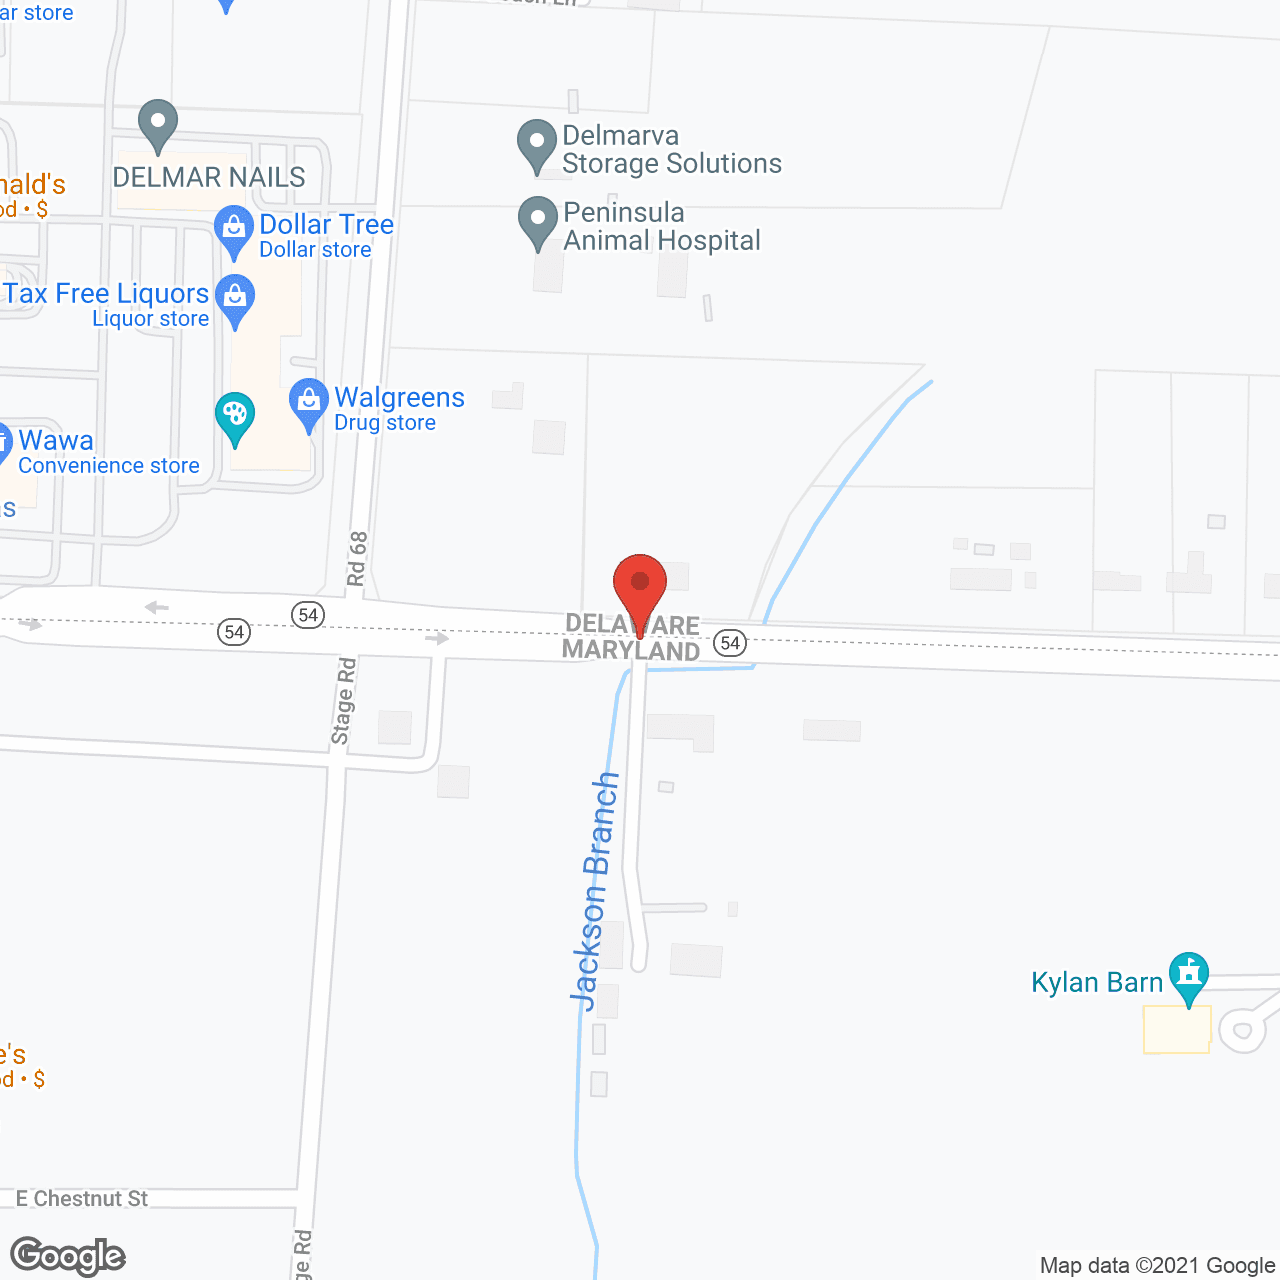 Delmar Villa in google map